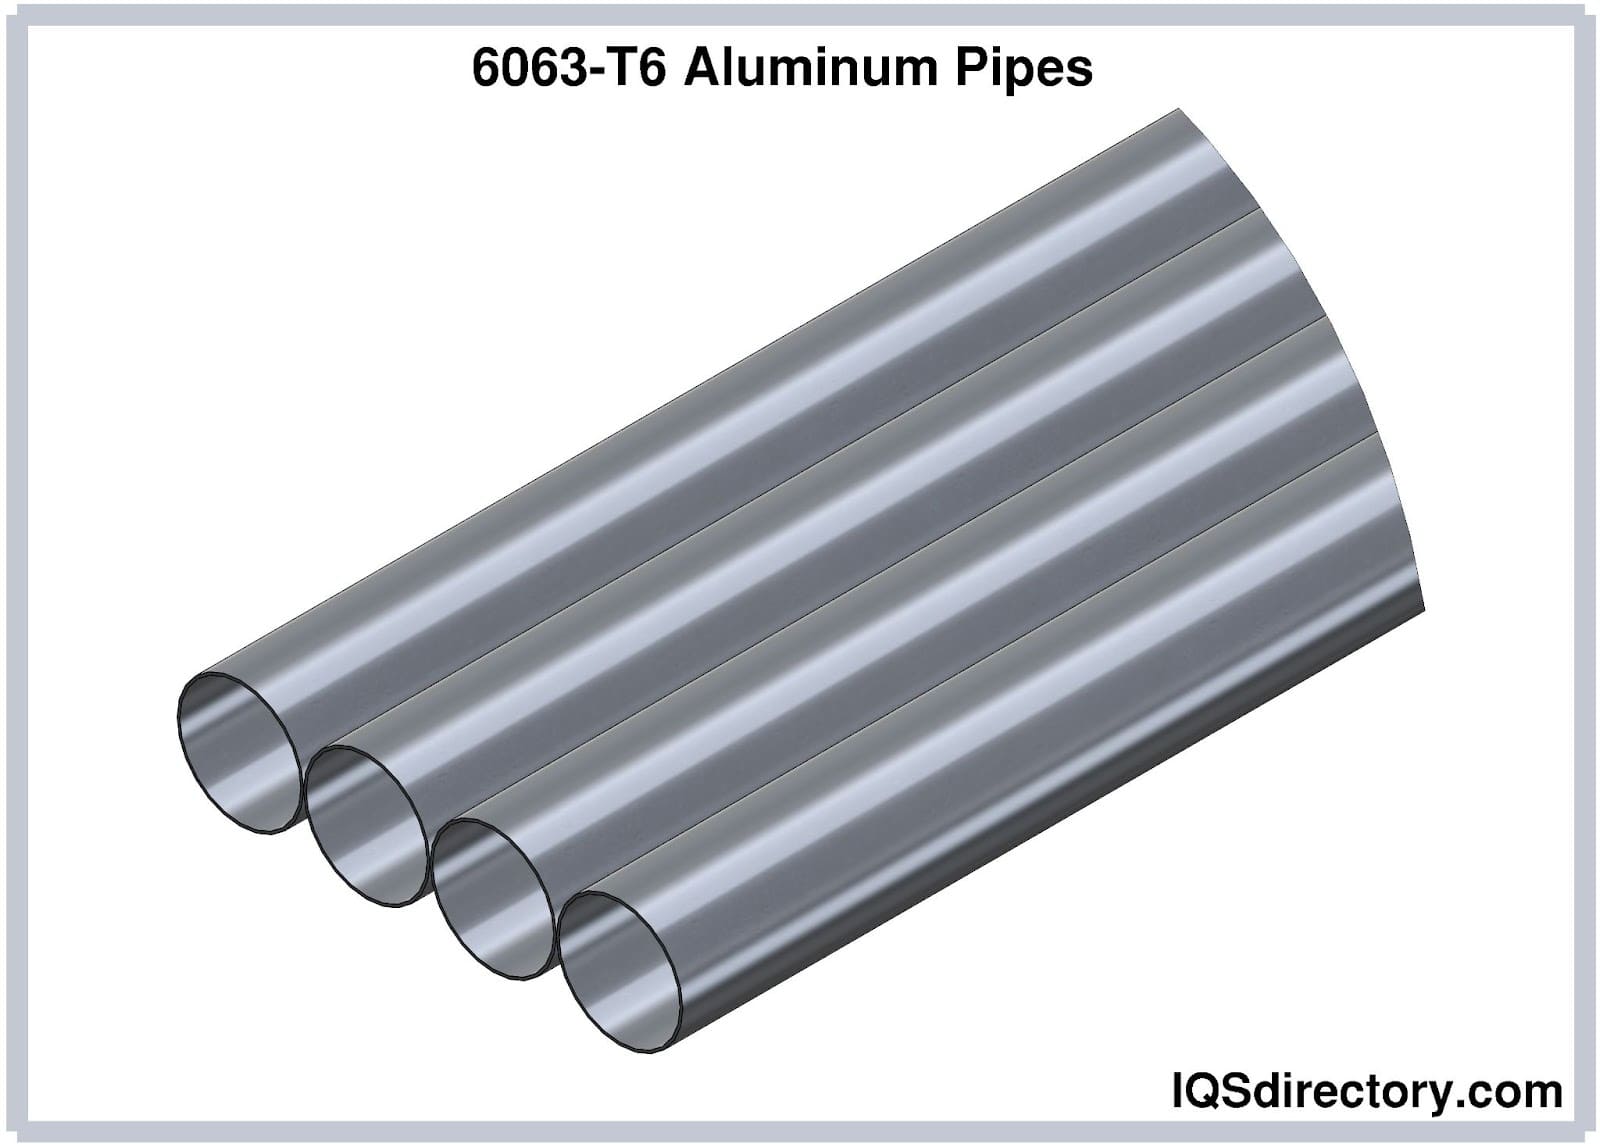 6063-T6 Aluminum Pipes